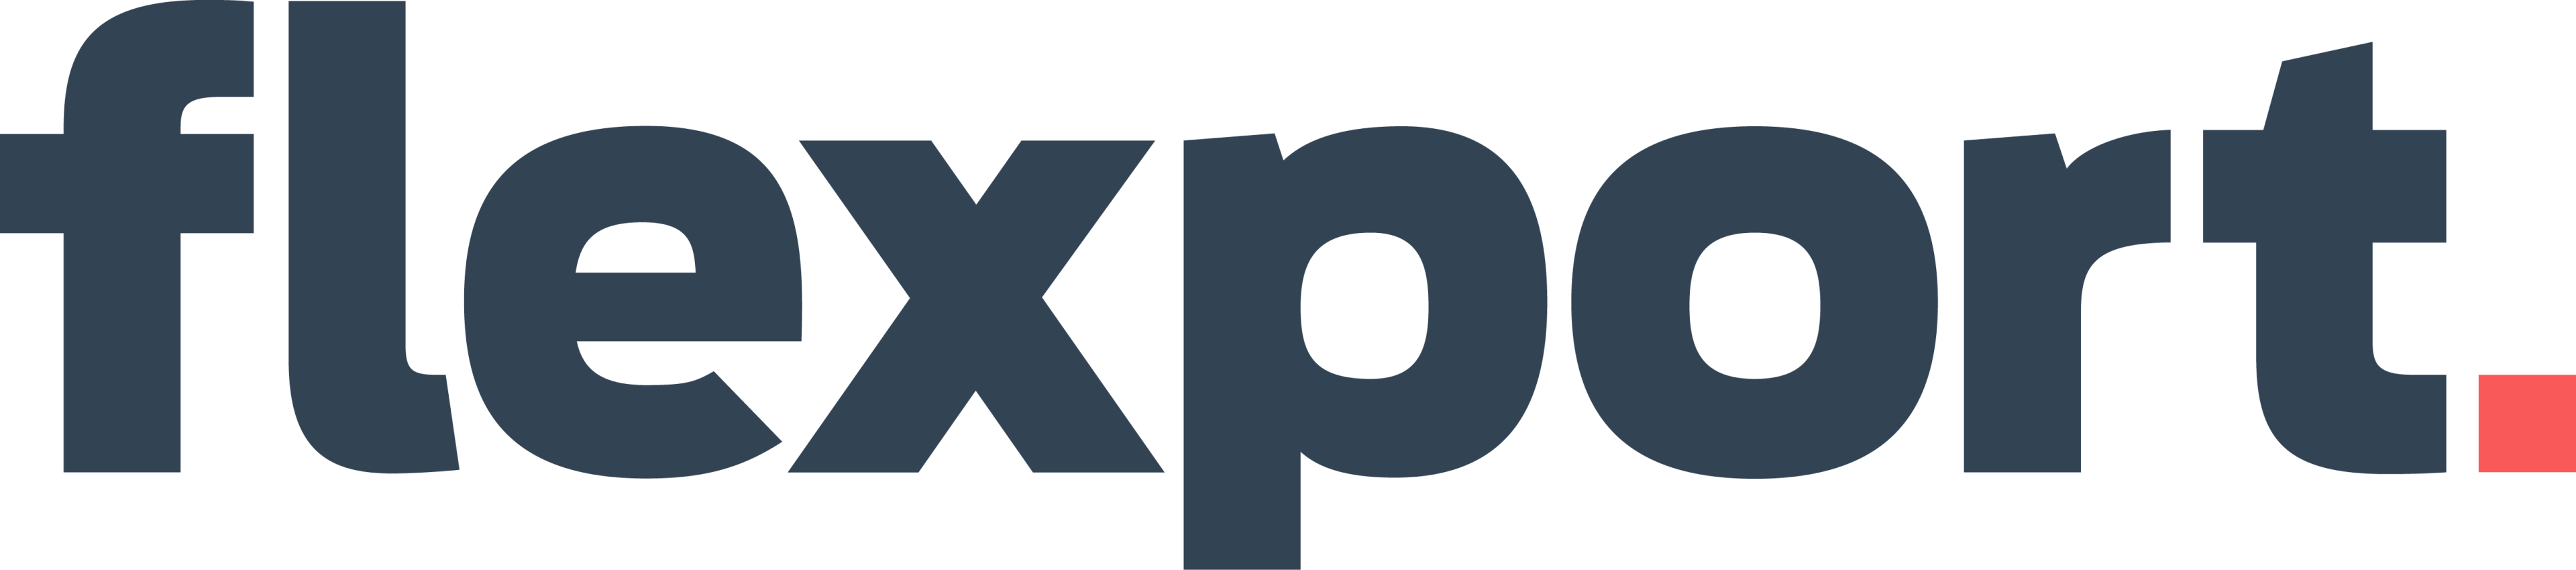 Director of Sales, Flexport logo